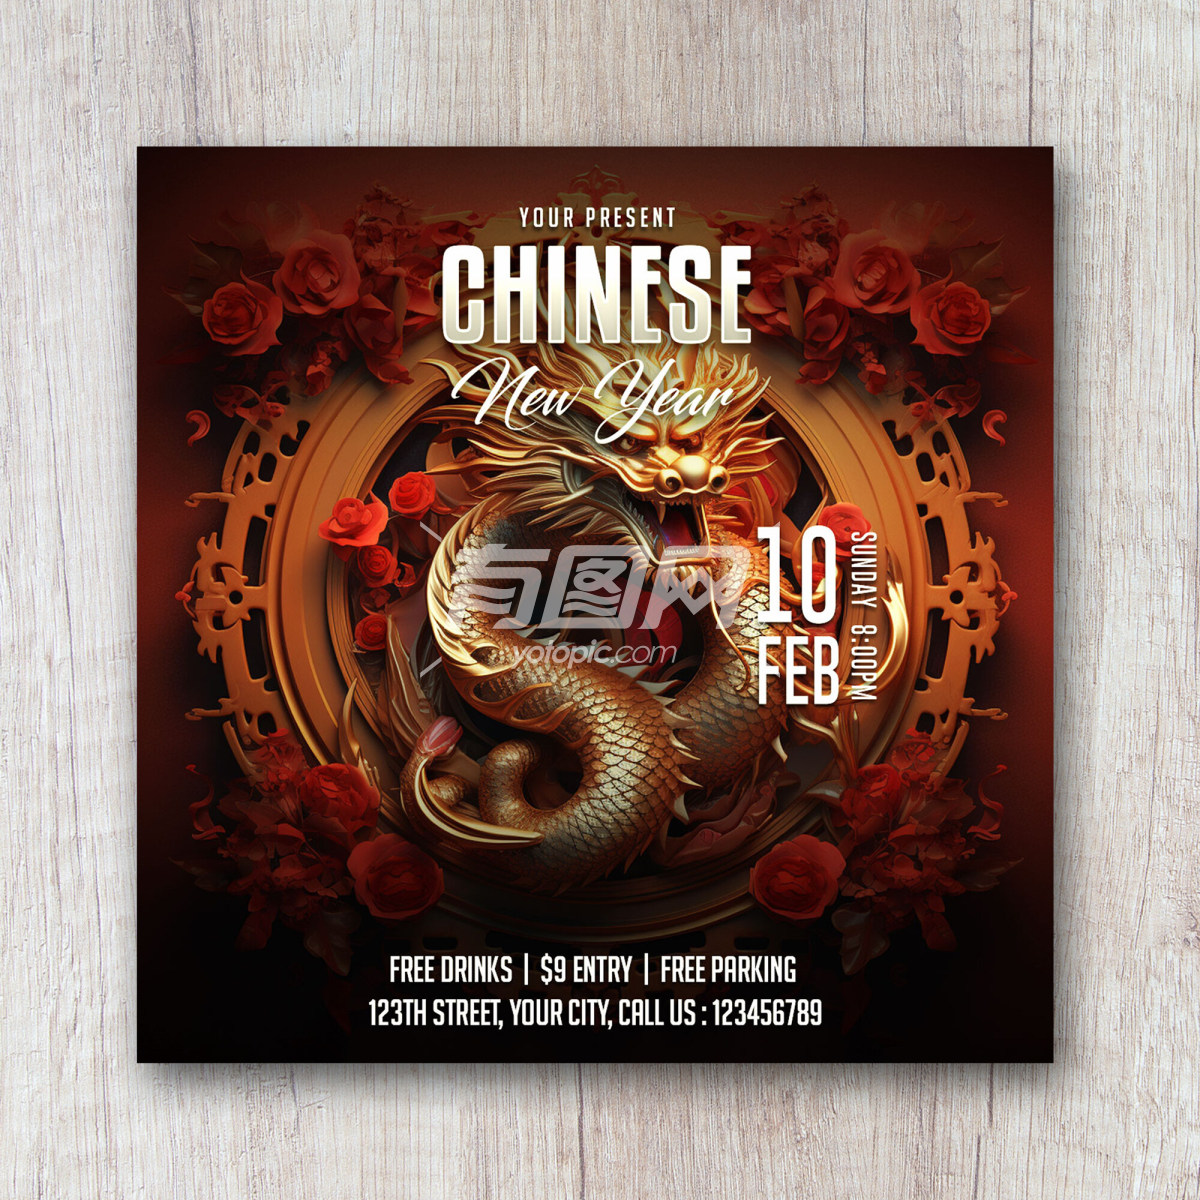 中国新年为主题的海报设计